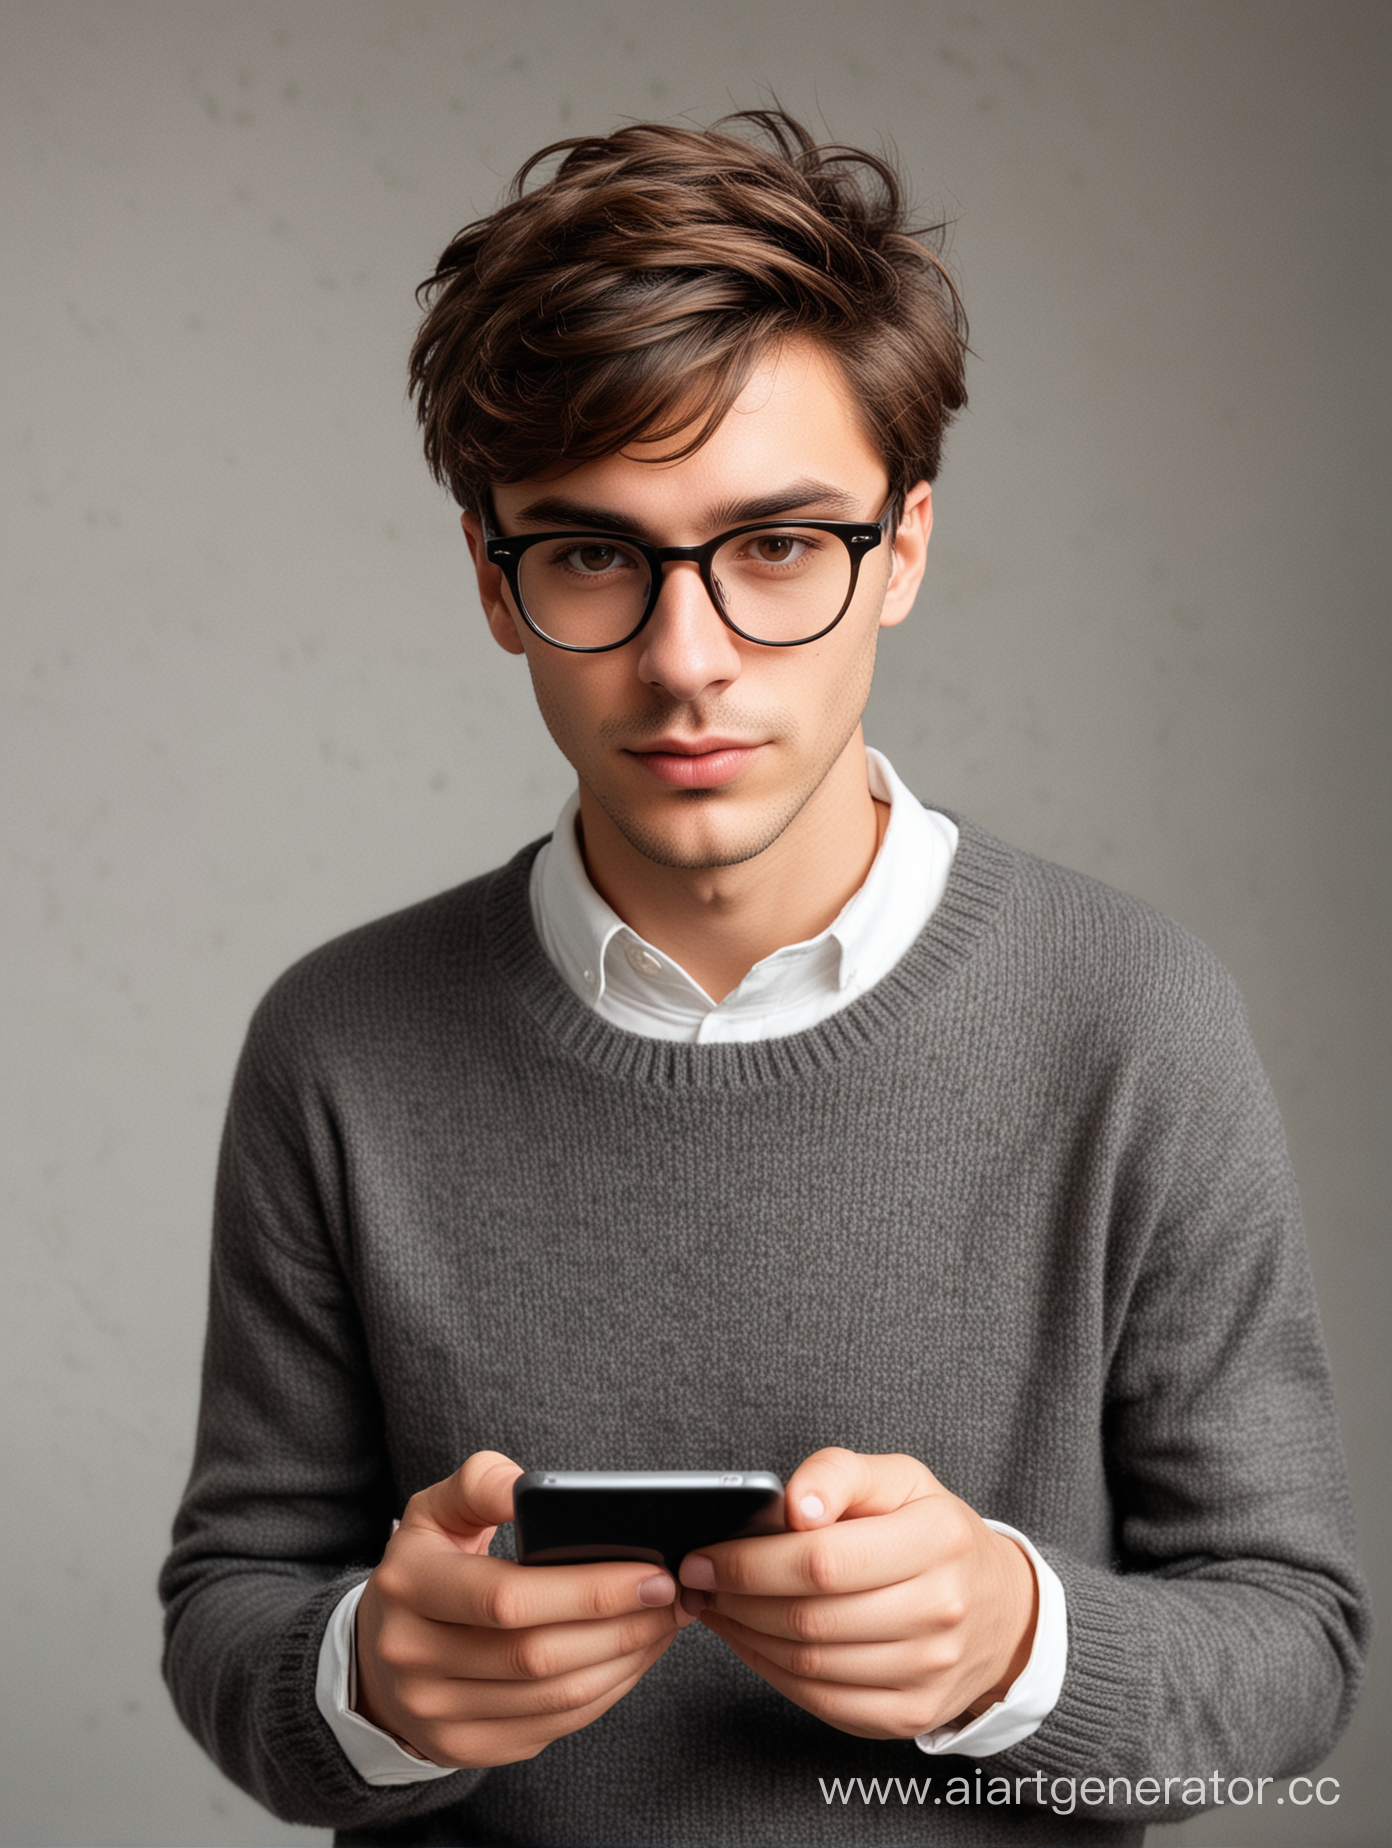 молодой парень француз шатен с короткой причёской и карими глазами в очках в роговой оправе в свитере и джинсах держит в руке смартфон